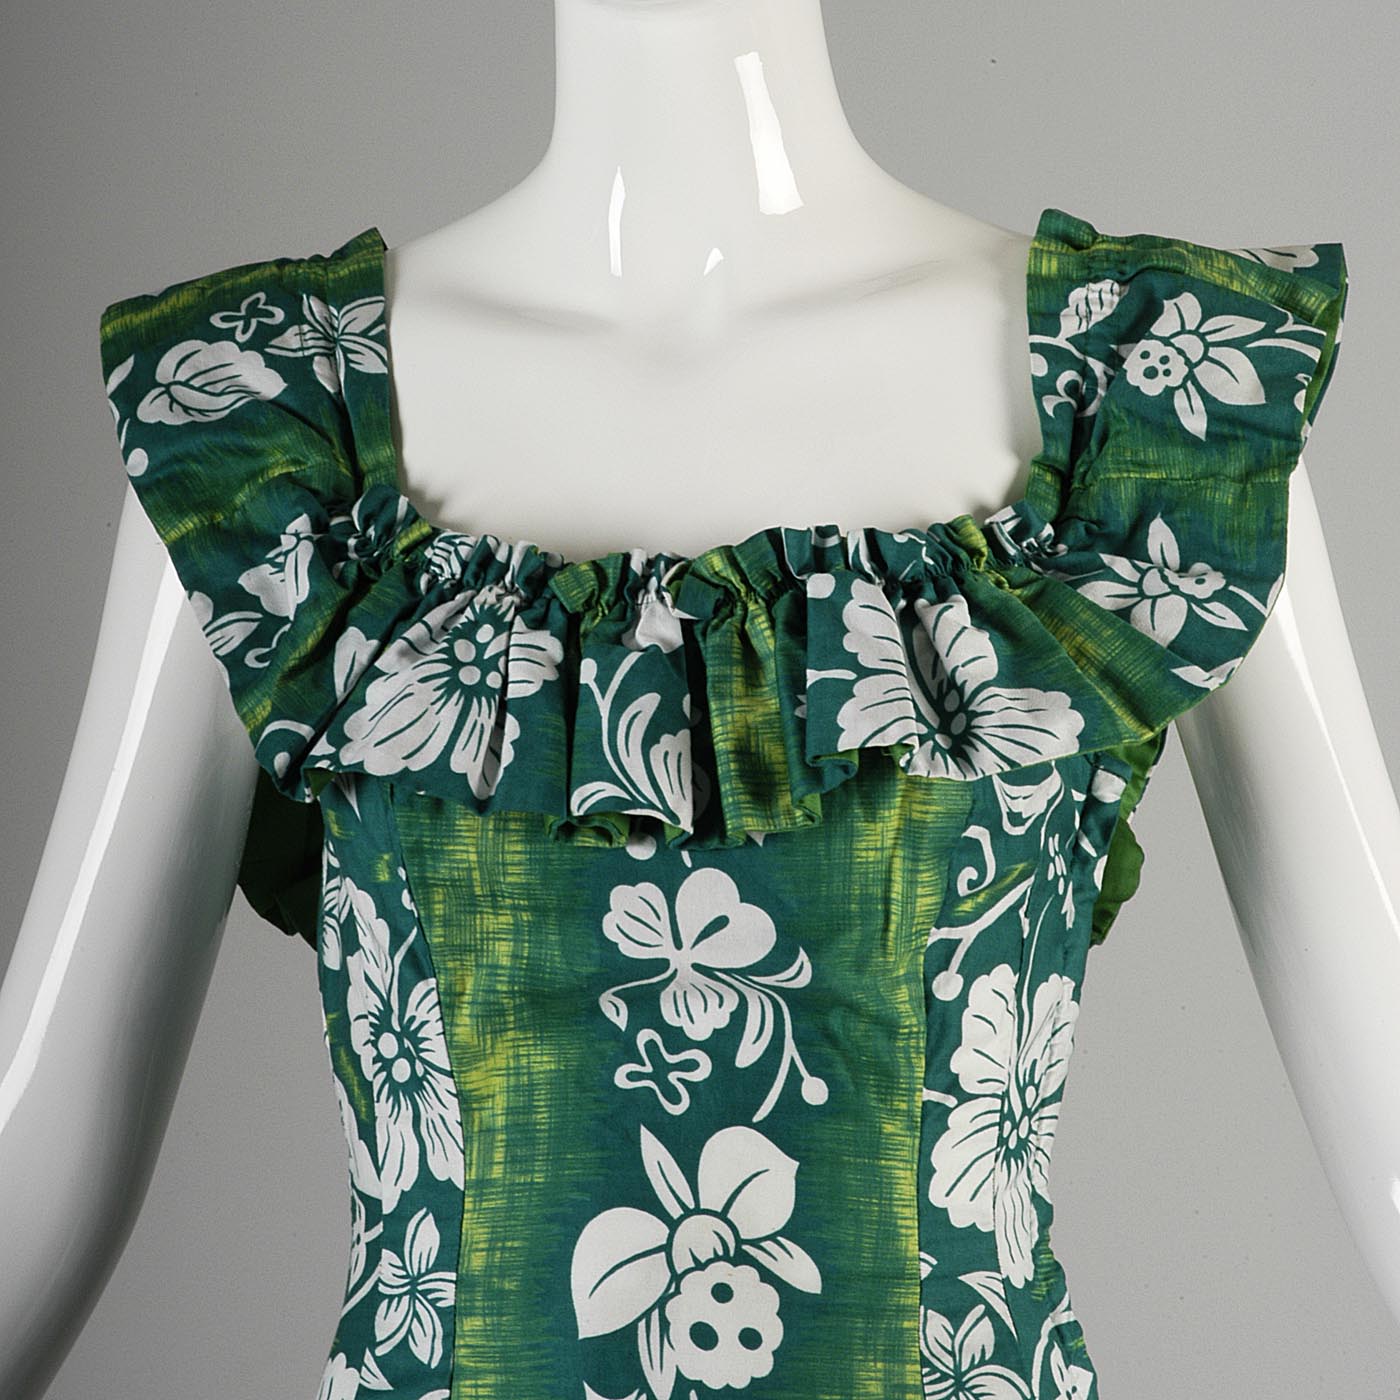 1950s Hawaiian Dress with Fishtail Hem